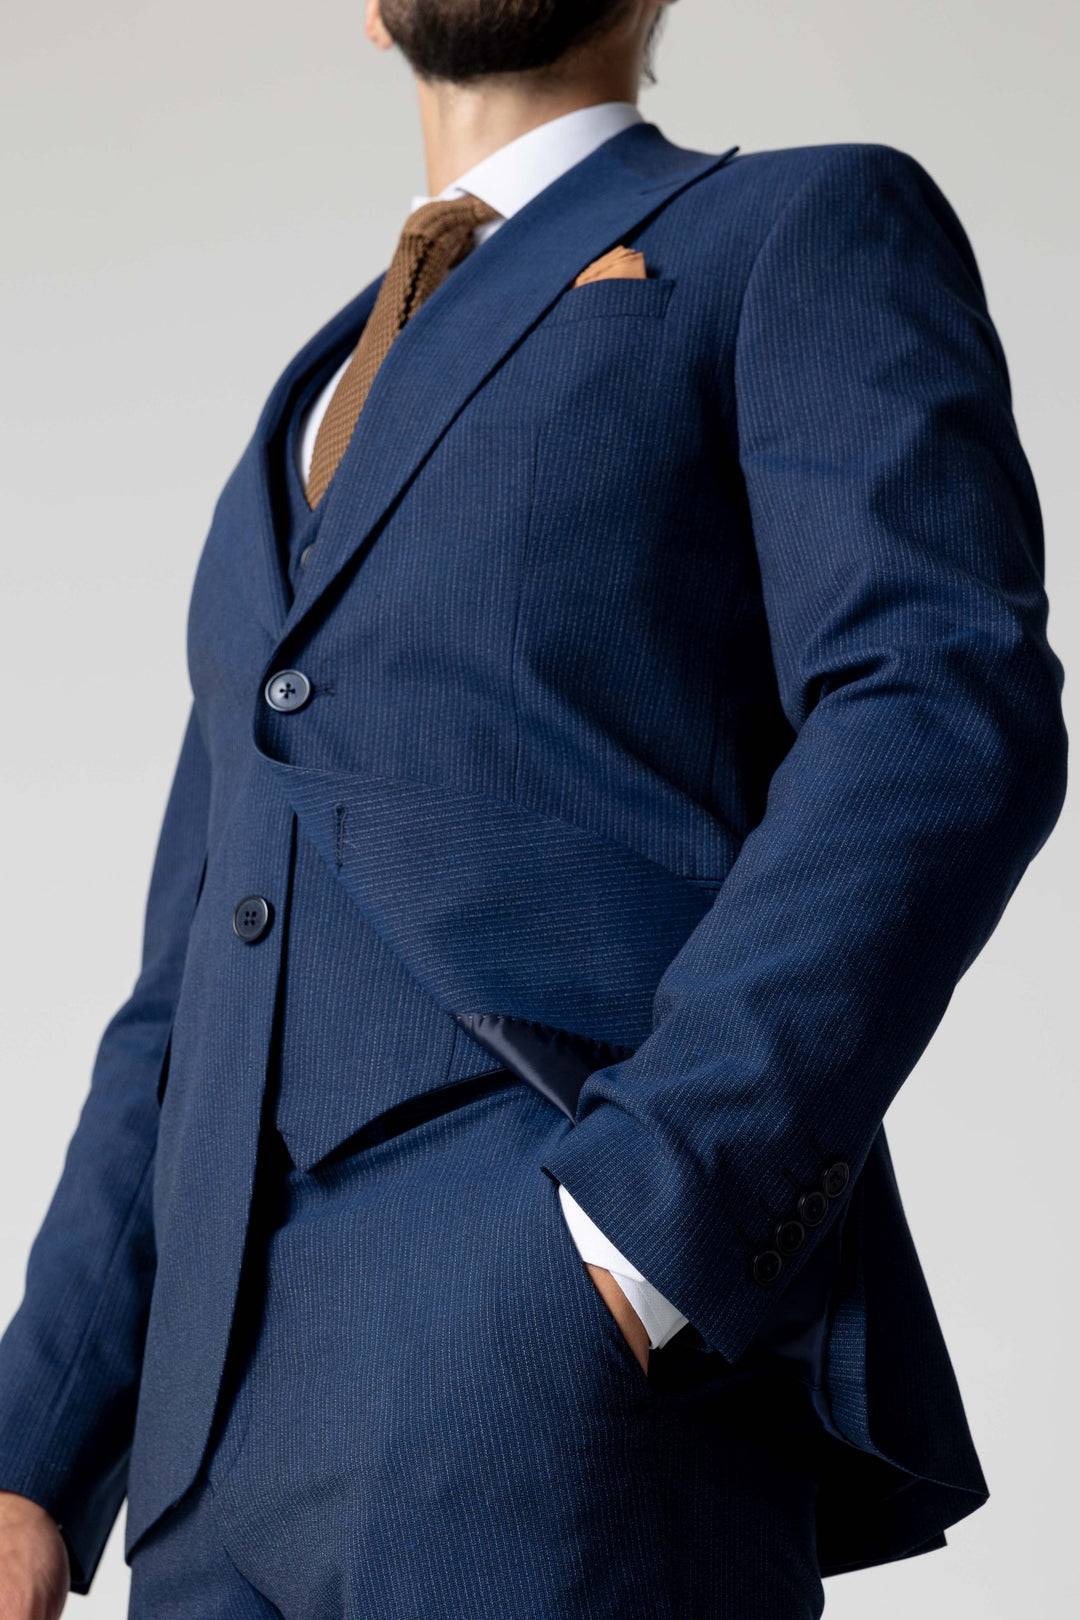 Trijų dalių mėlynas kostiumas su smulkiomis linijomis